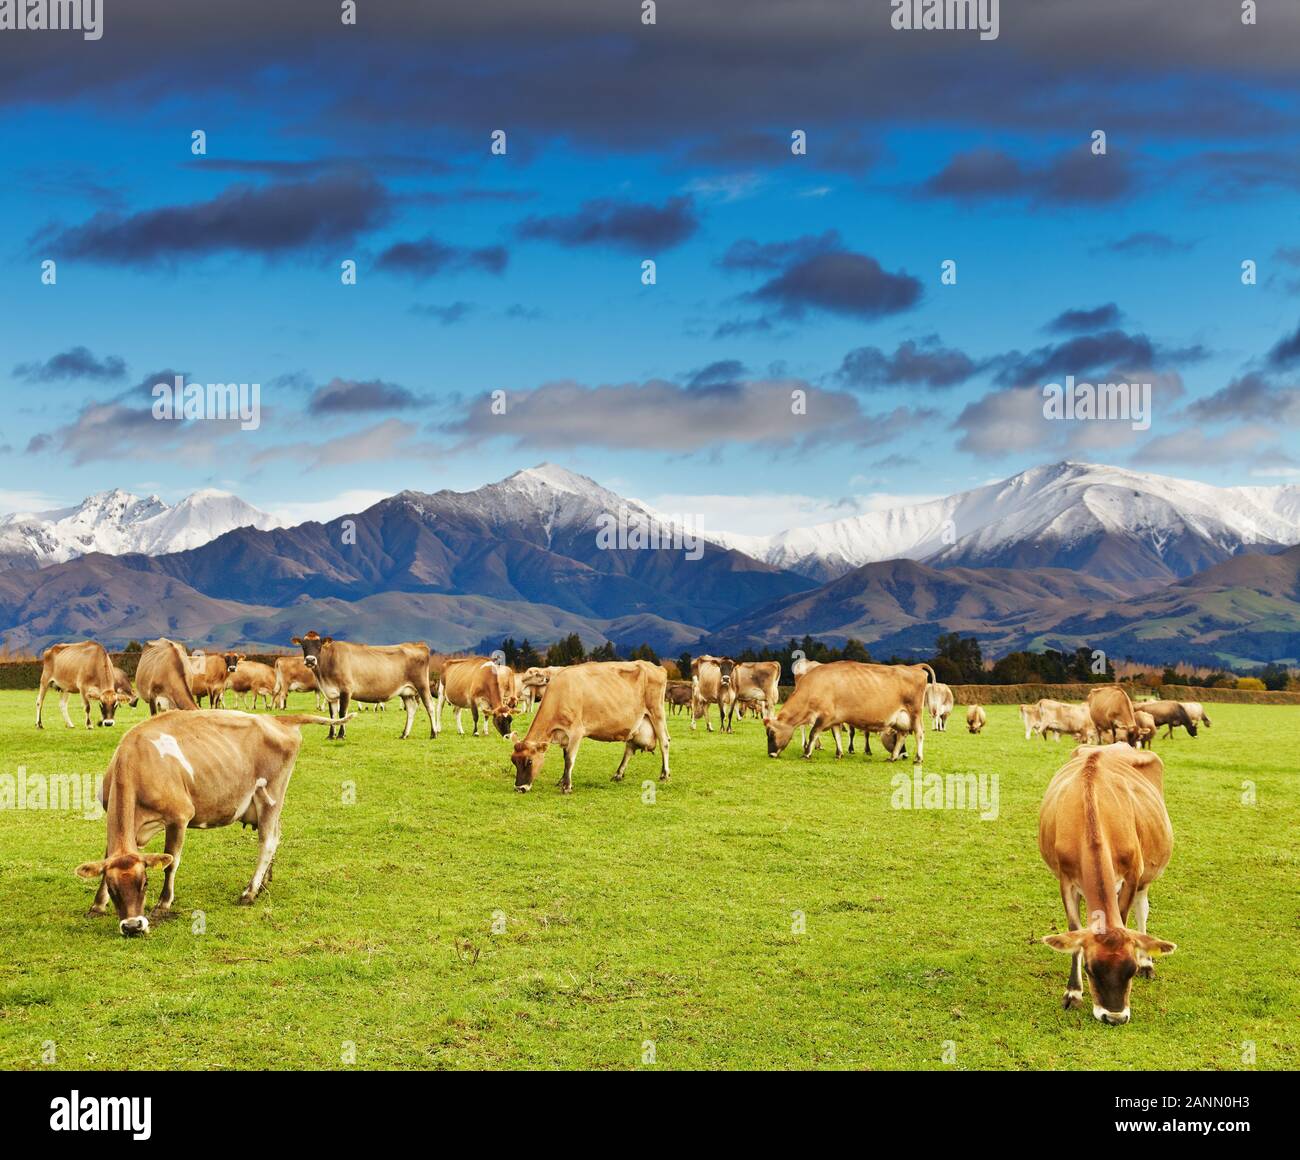 Paysage avec les montagnes enneigées et les vaches de pâturage, la Nouvelle-Zélande Banque D'Images